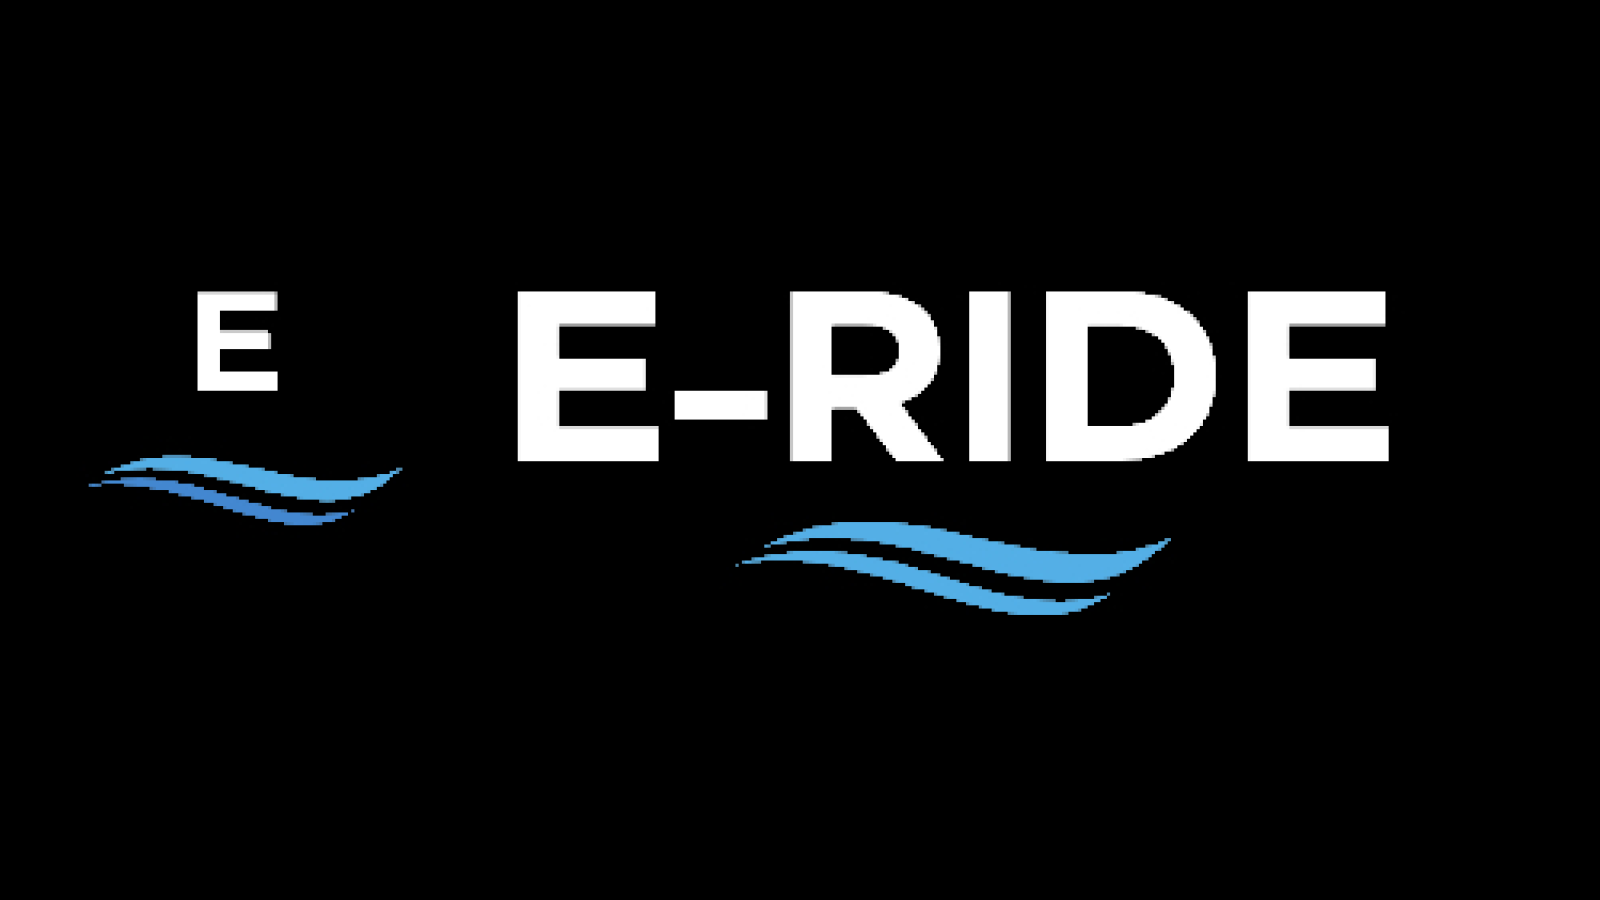  E-RIDE64